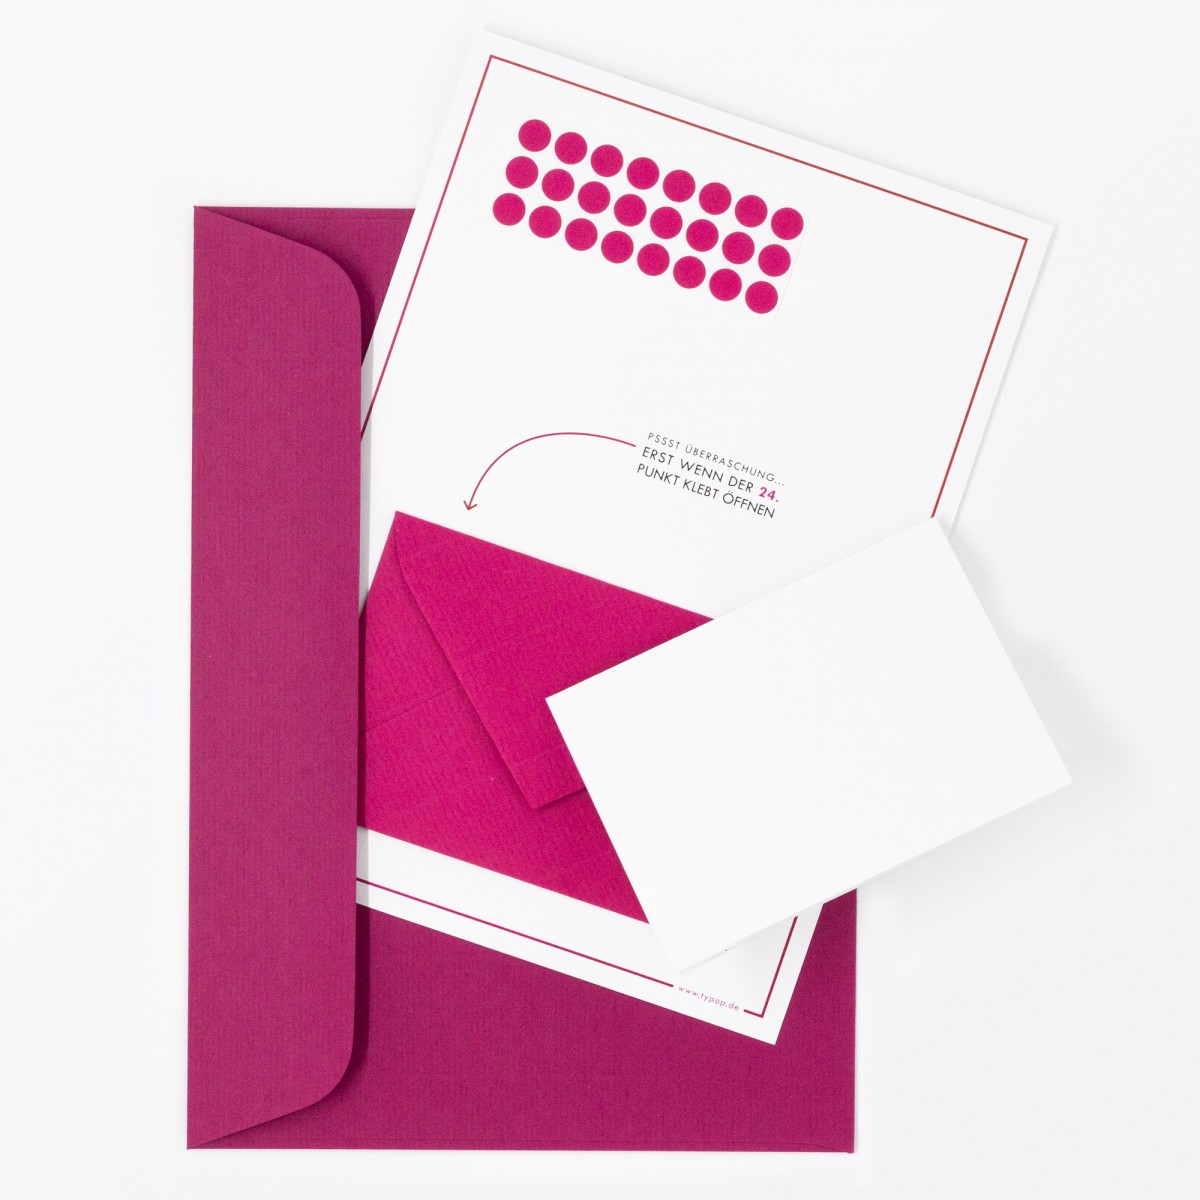 TYPOP Adventskalenderkarte “Schneemann” inkl. Umschlag, Minikarte + Umschlag und Klebepunkte